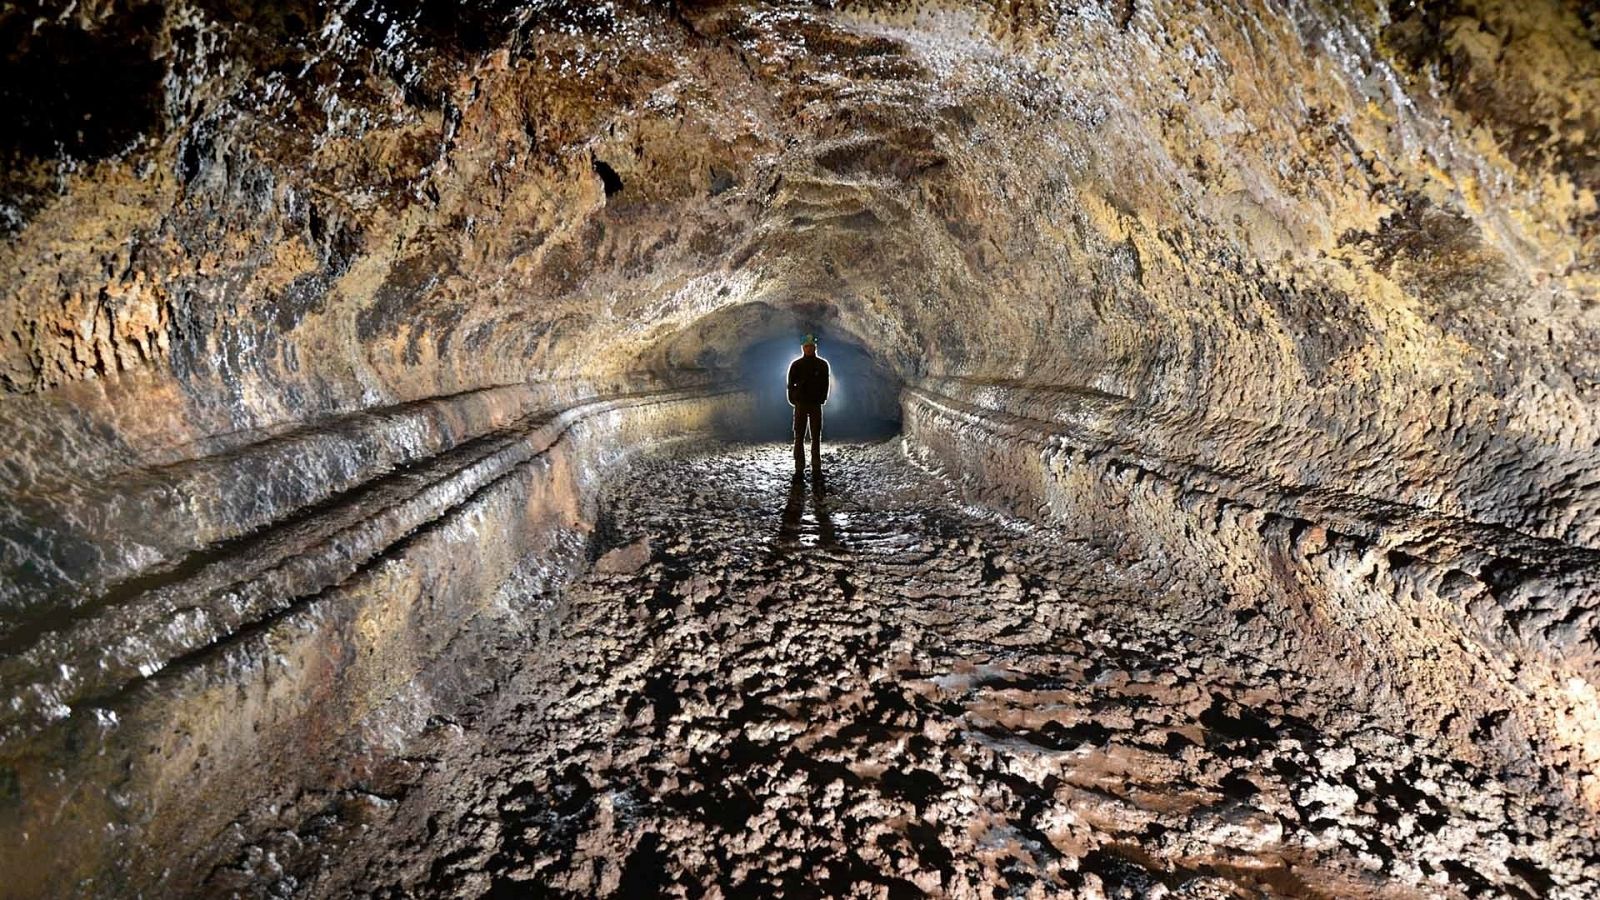 Reabre al público La cueva del Viento (Tenerife), el tubo volcánico más largo de Europa